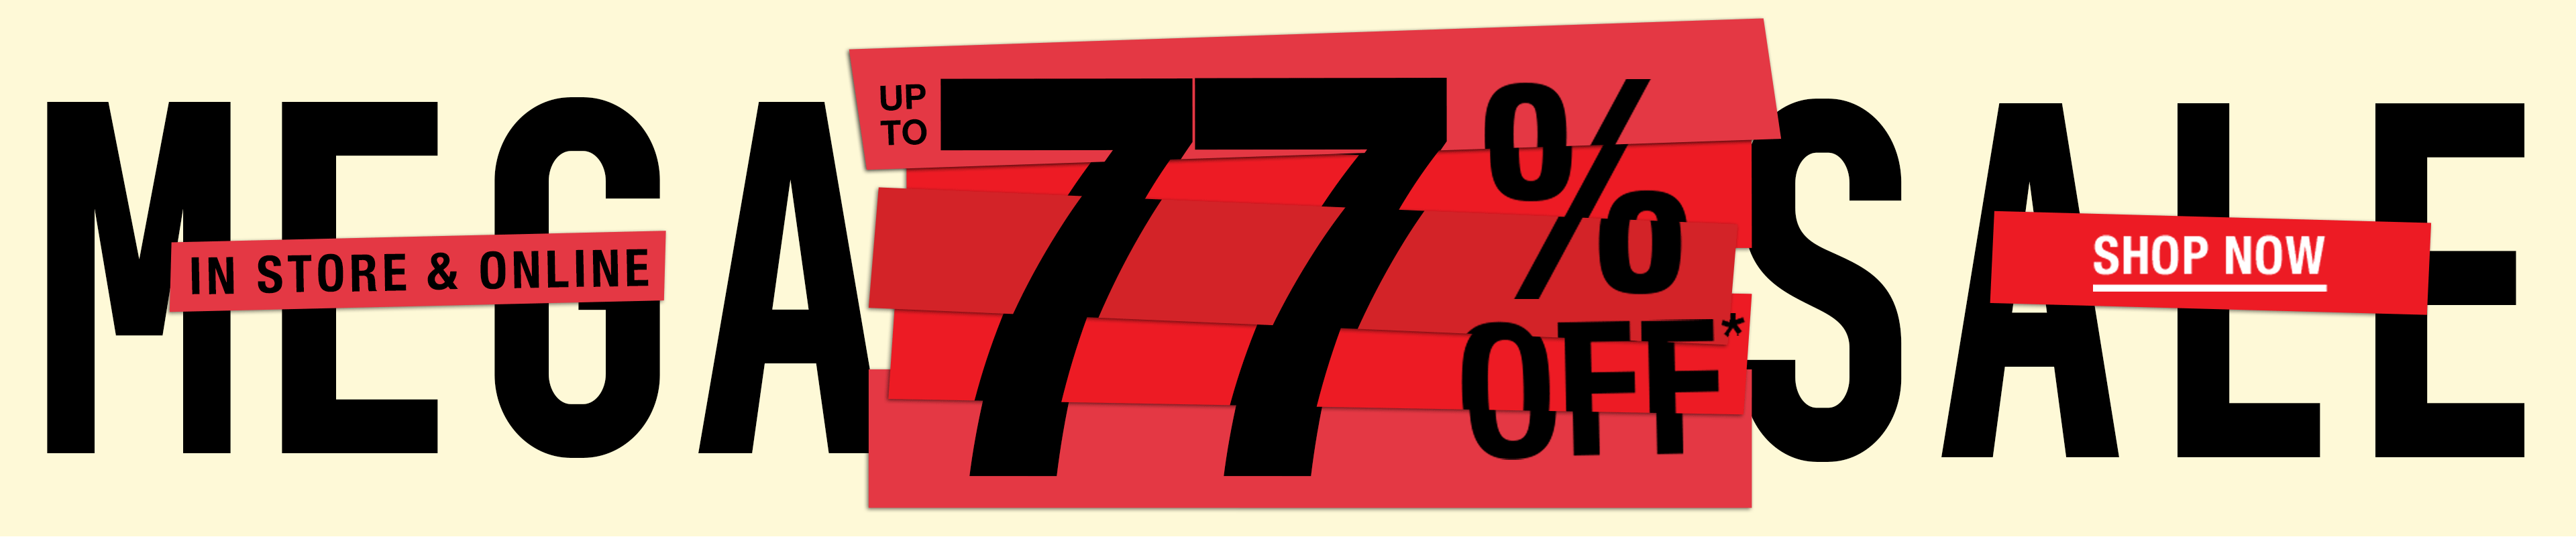 Mega Sale up to 77% off!